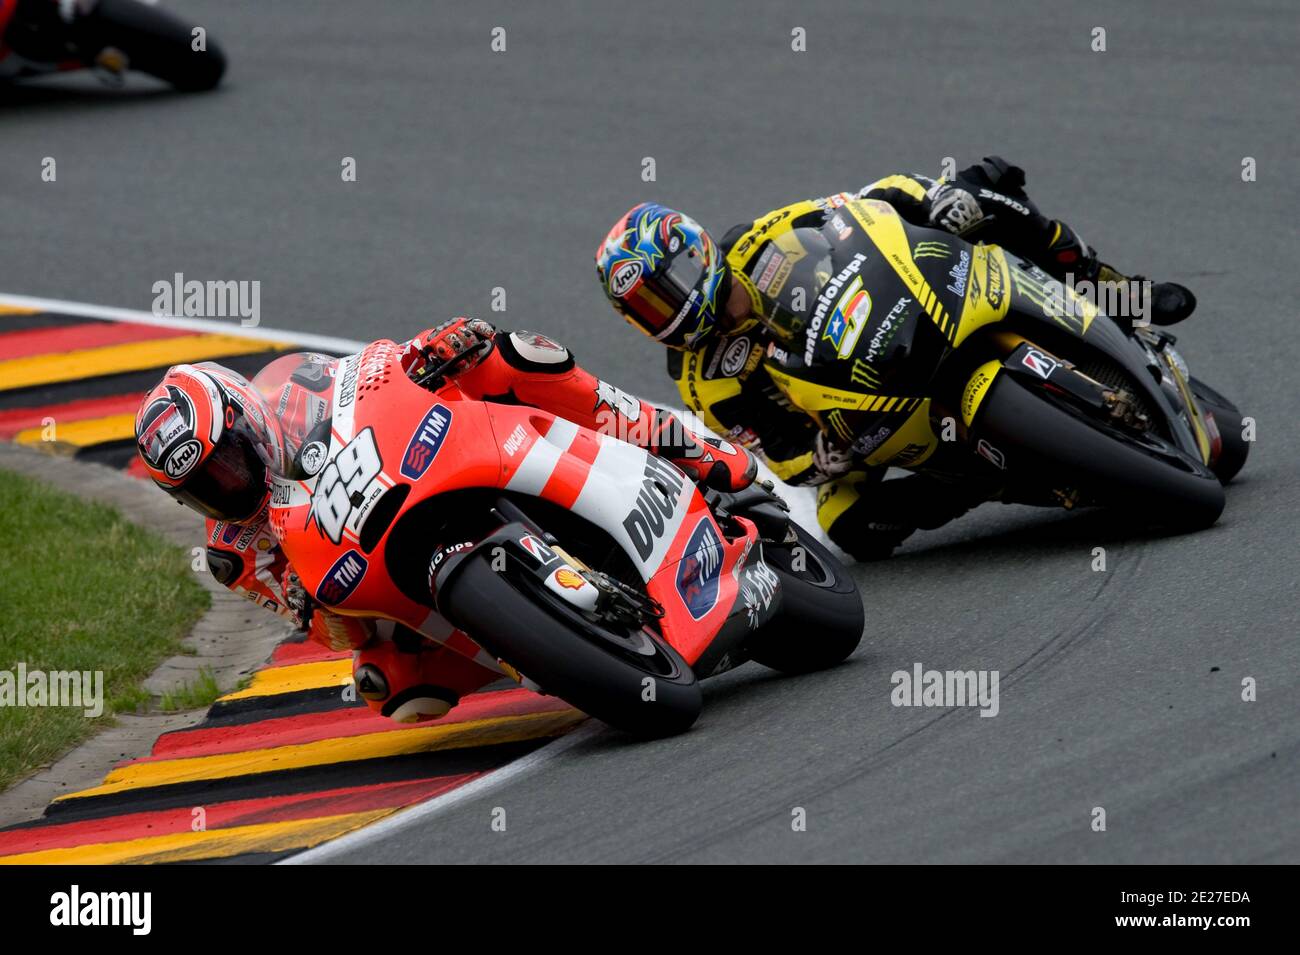 Nicky Hayden, pilote de MotoGP aux États-Unis, de Ducati lors de la course  du Grand Prix d'Allemagne de MotoGP à Sachsenring, en Allemagne, le 2011  juillet. Photo de Malkon/ABACAPRESS.COM Photo Stock -